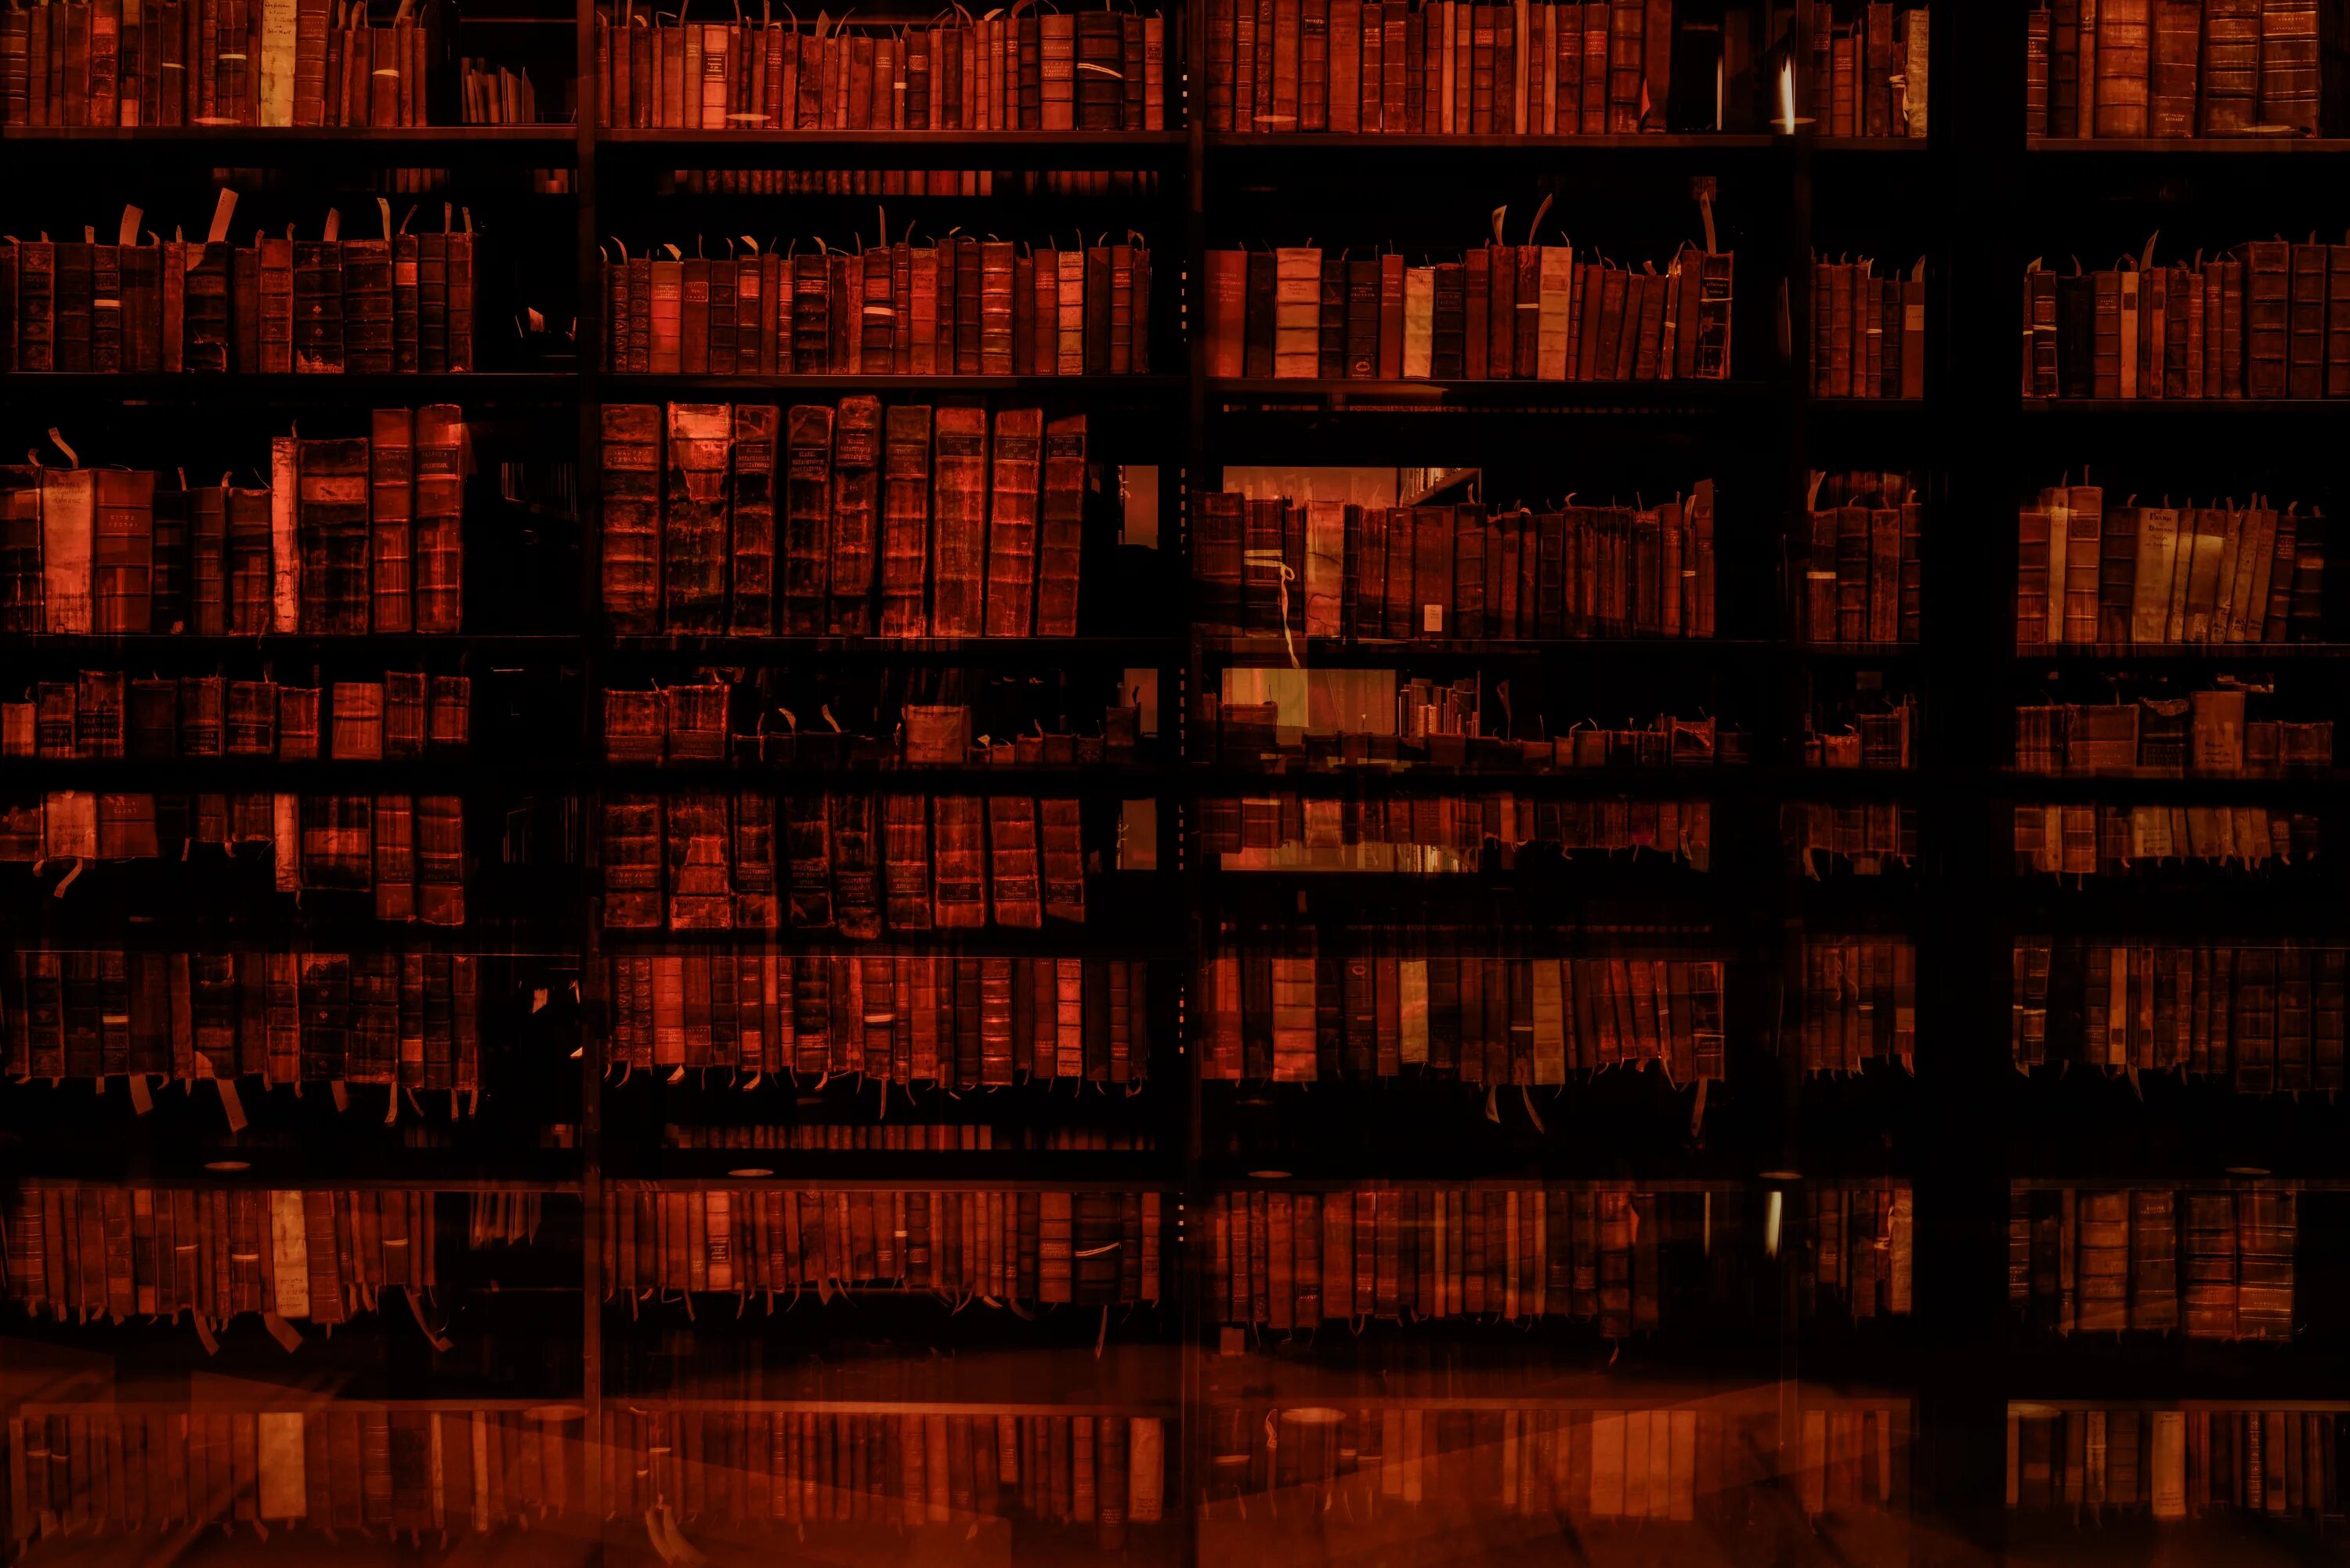 Beinecke rare book & Manuscript Library. Библиотека редких книг и рукописей Бейнеке. Библиотека текстура. Ящики в библиотеке текстура.